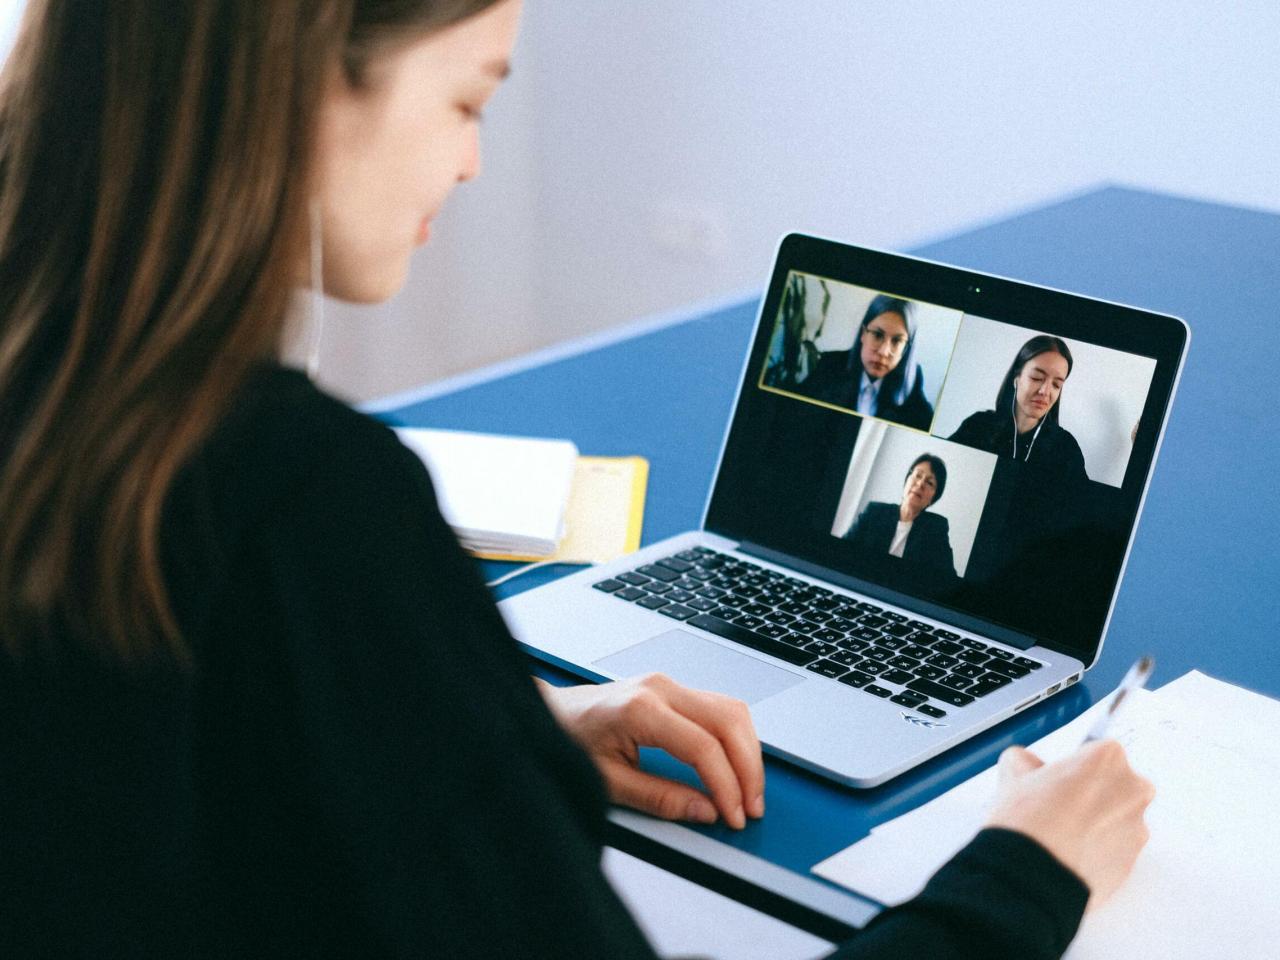 Een vrouw videobelt met drie personen op haar laptop